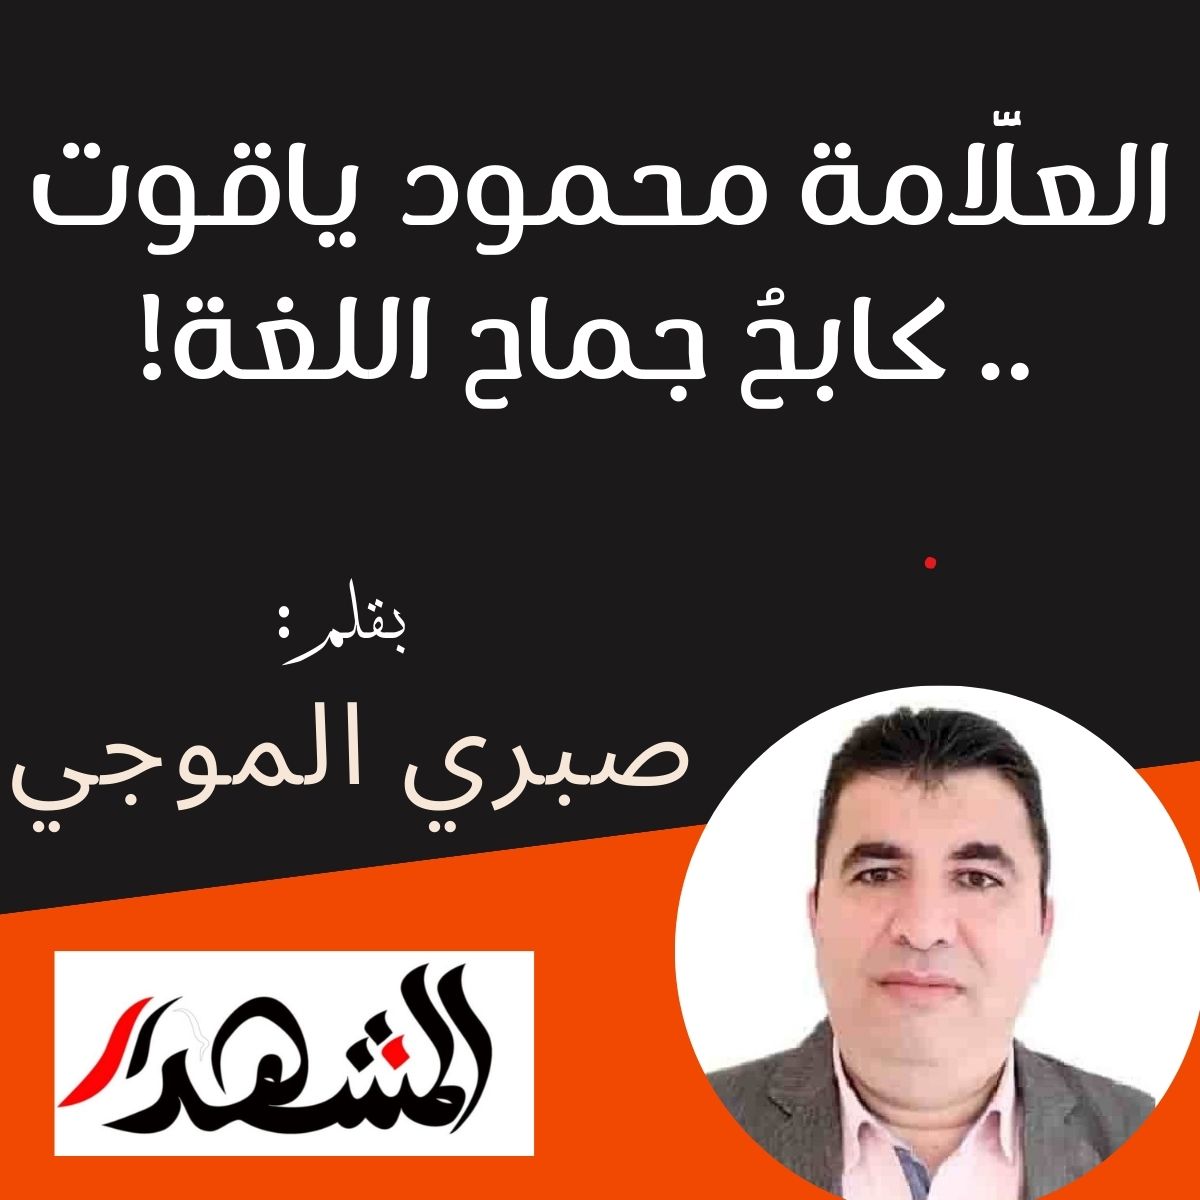 العلَّامة محمود ياقوت .. كابحُ جماح اللغة!

